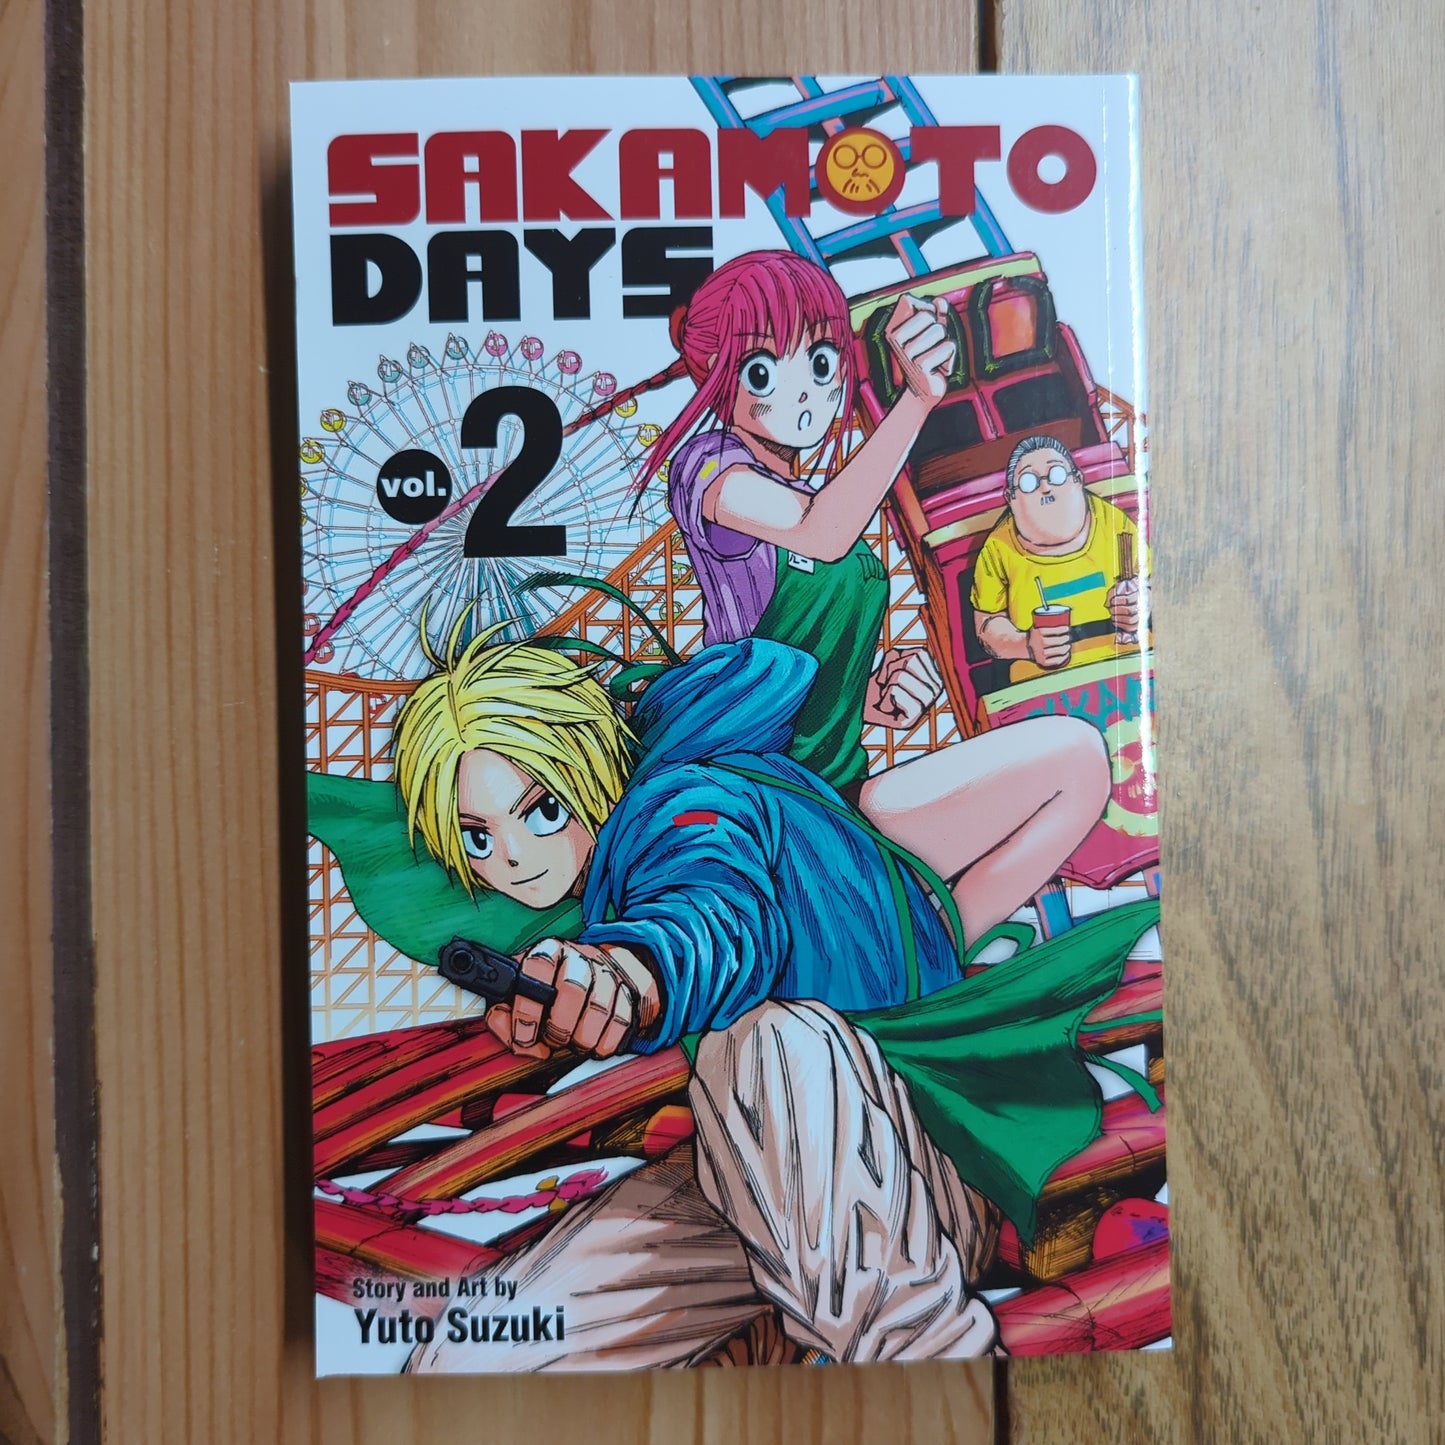 Sakamoto Days Vol 2